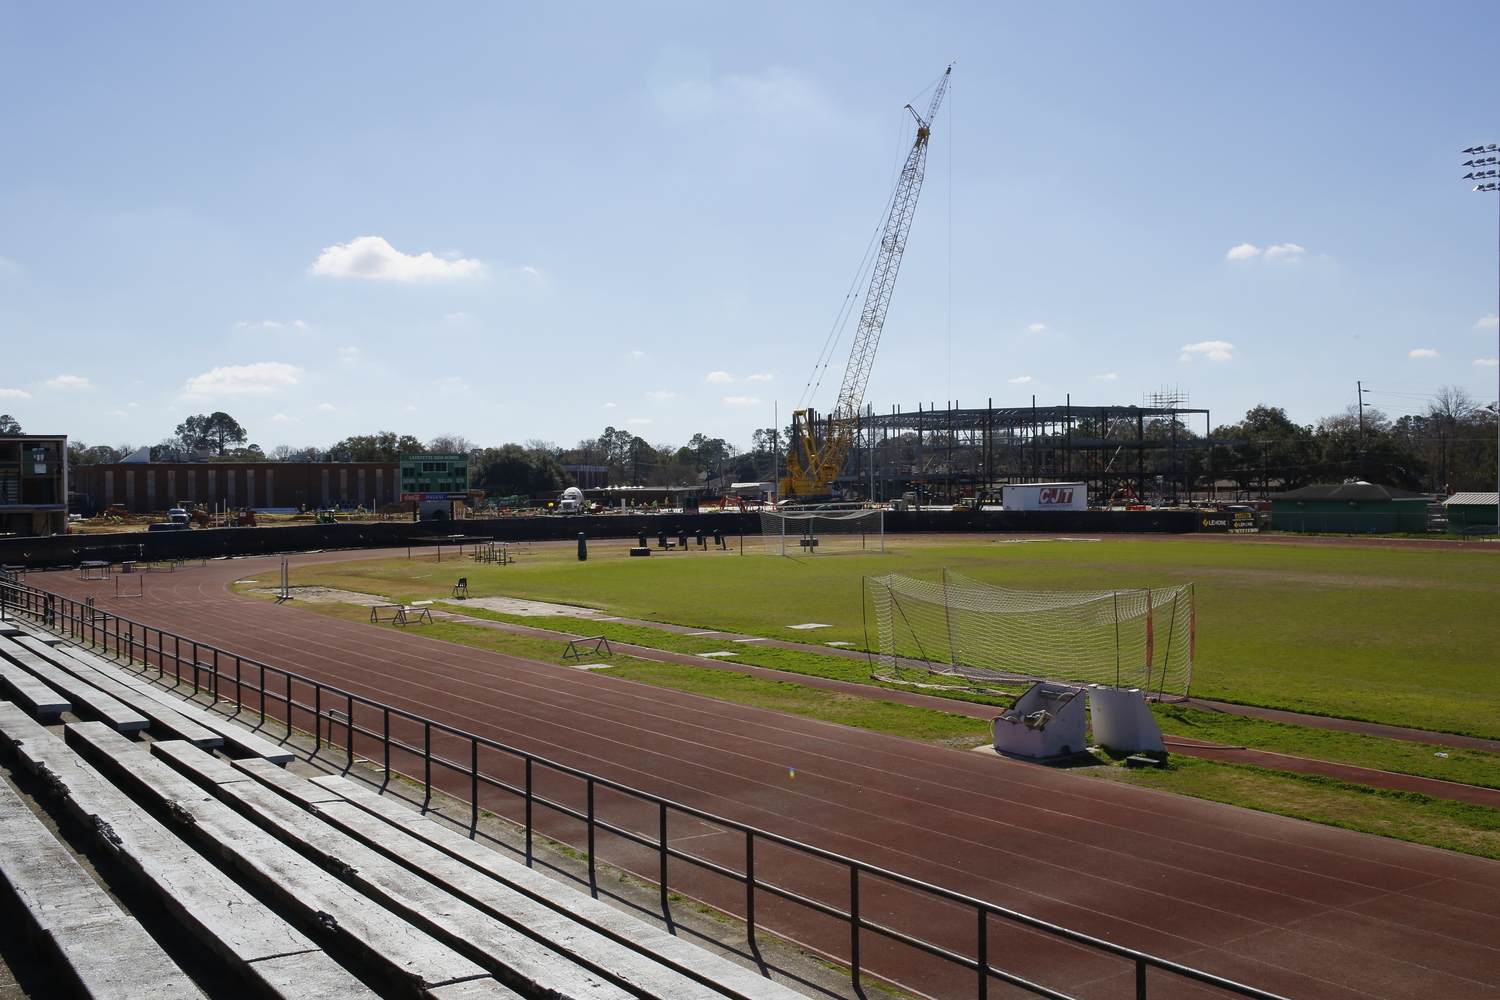 Terrain de football de Lafayette High School avec vue sur le chantier de construction du prochain lycée © Globe Reporters